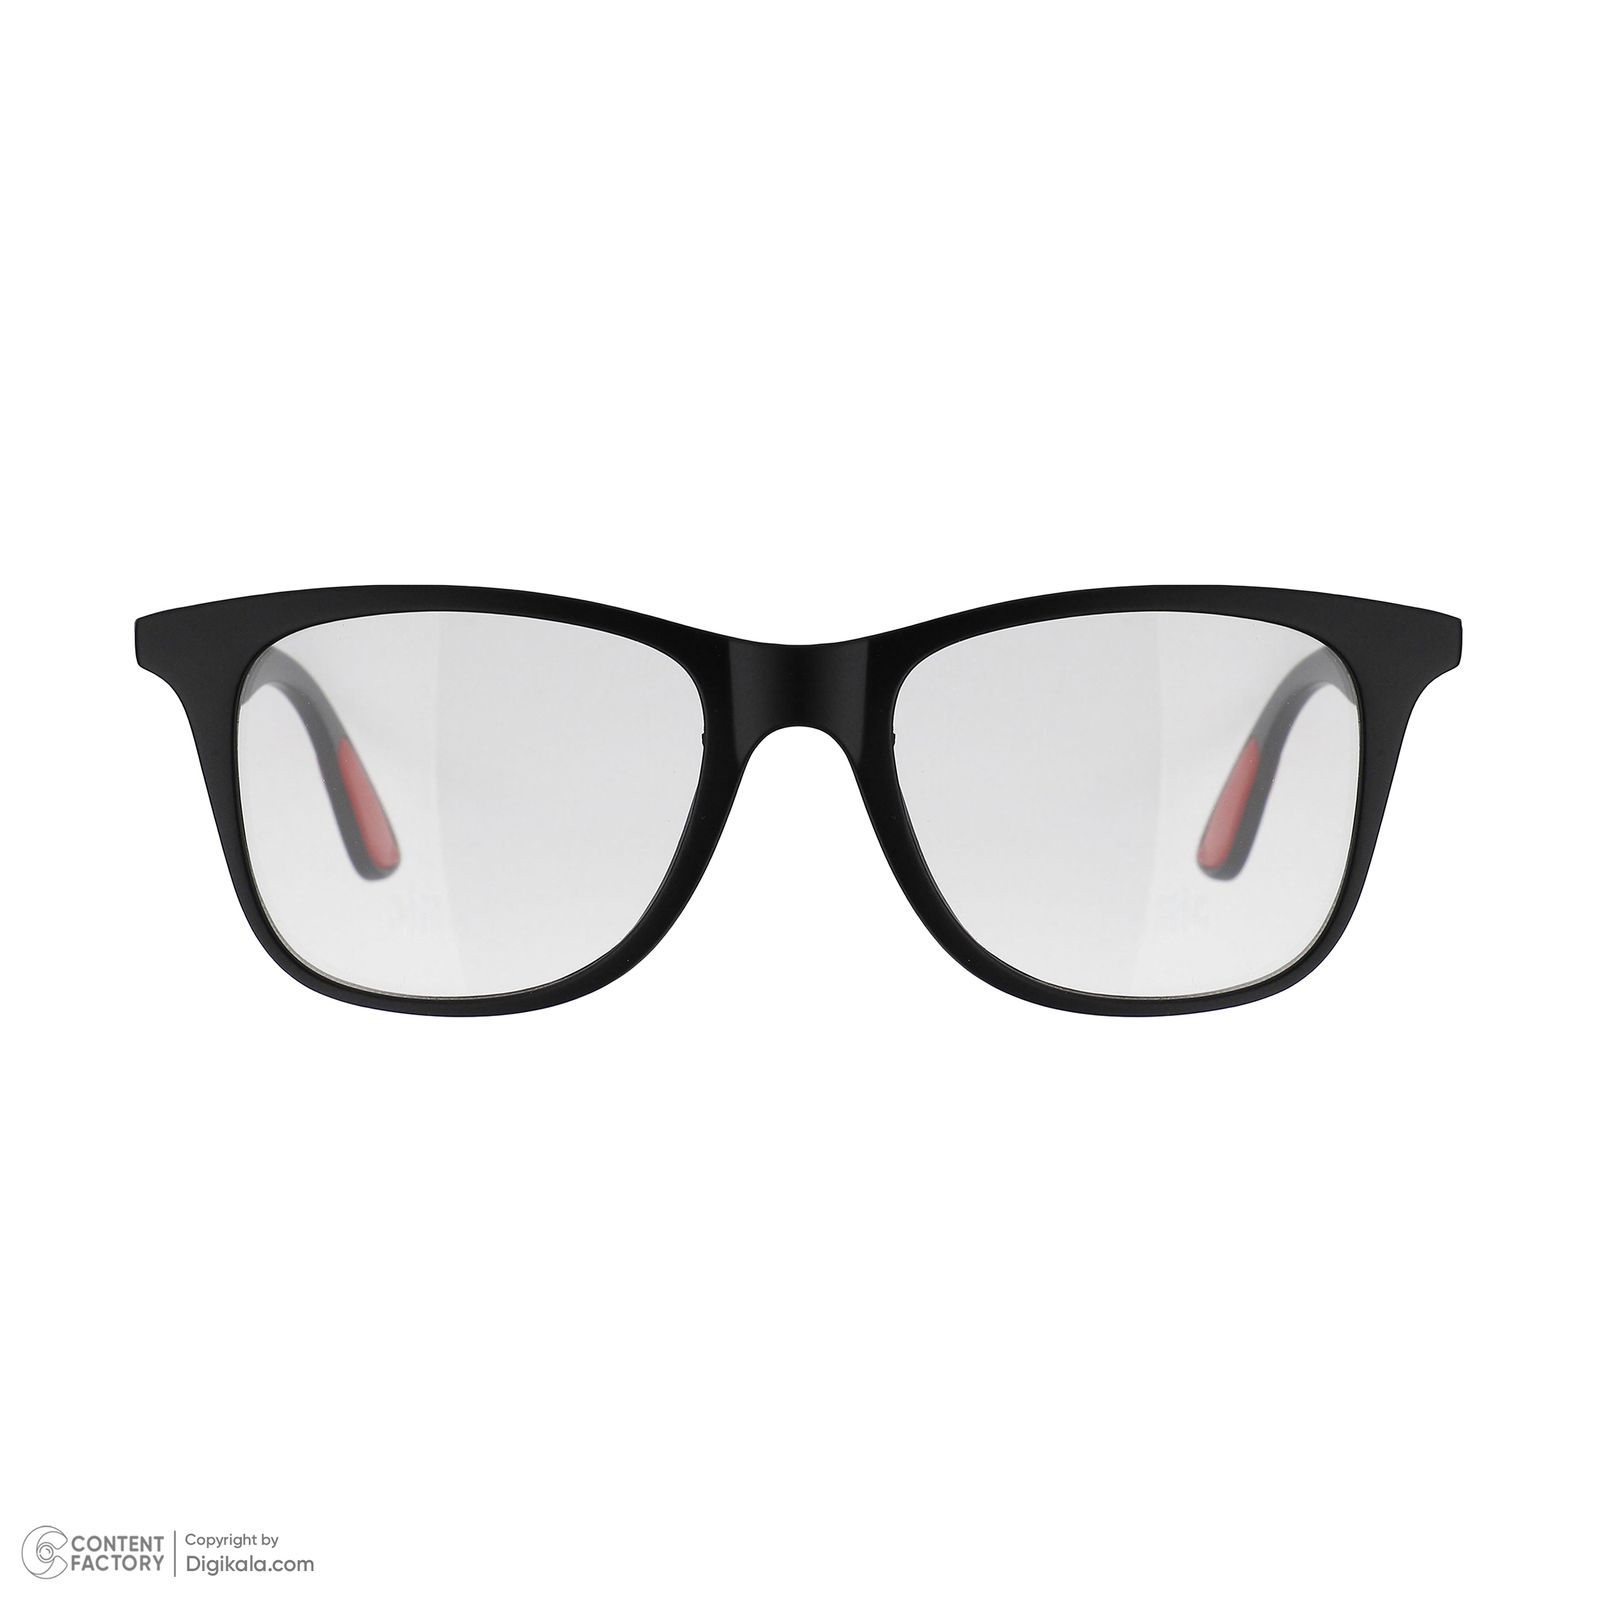 فریم عینک طبی به همراه کاور آفتابی دونیک مدل tr2317-c2 مجموعه 6 عددی -  - 3